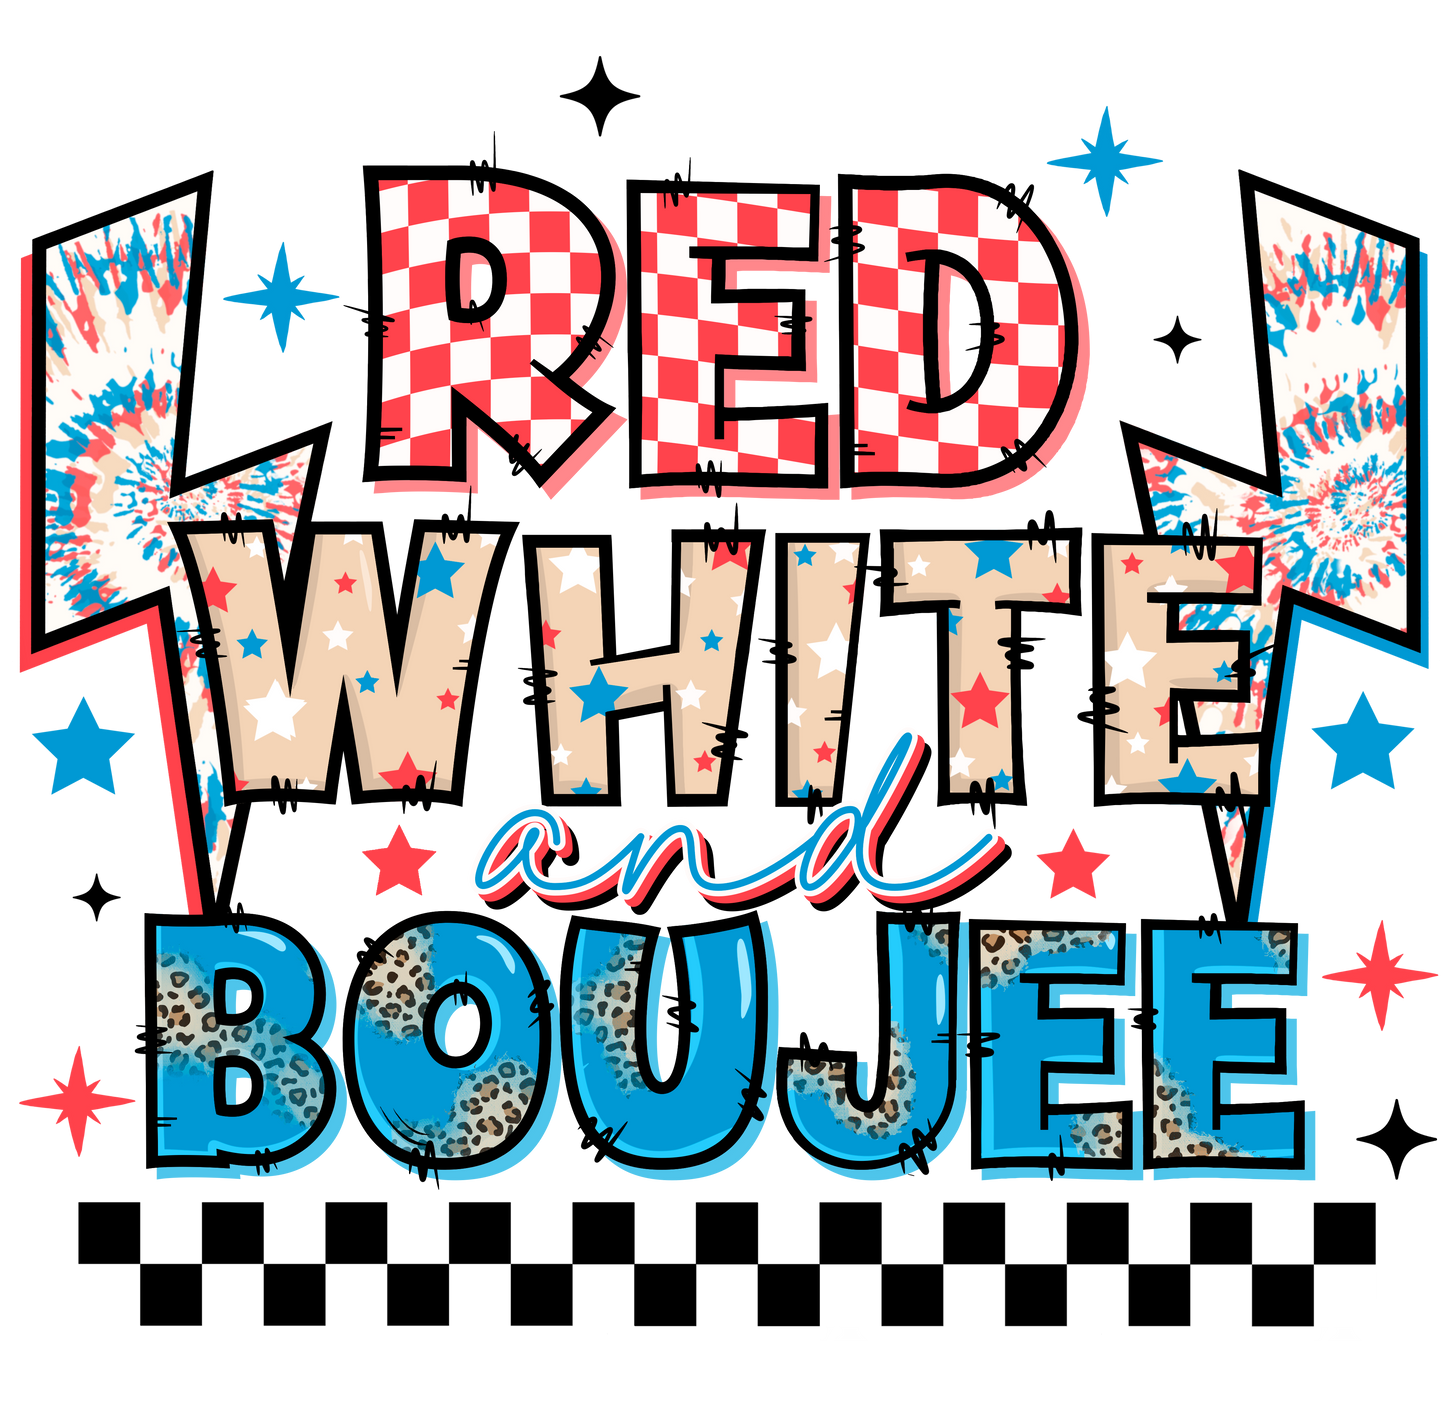 rwb set red white boujee dtf transfer